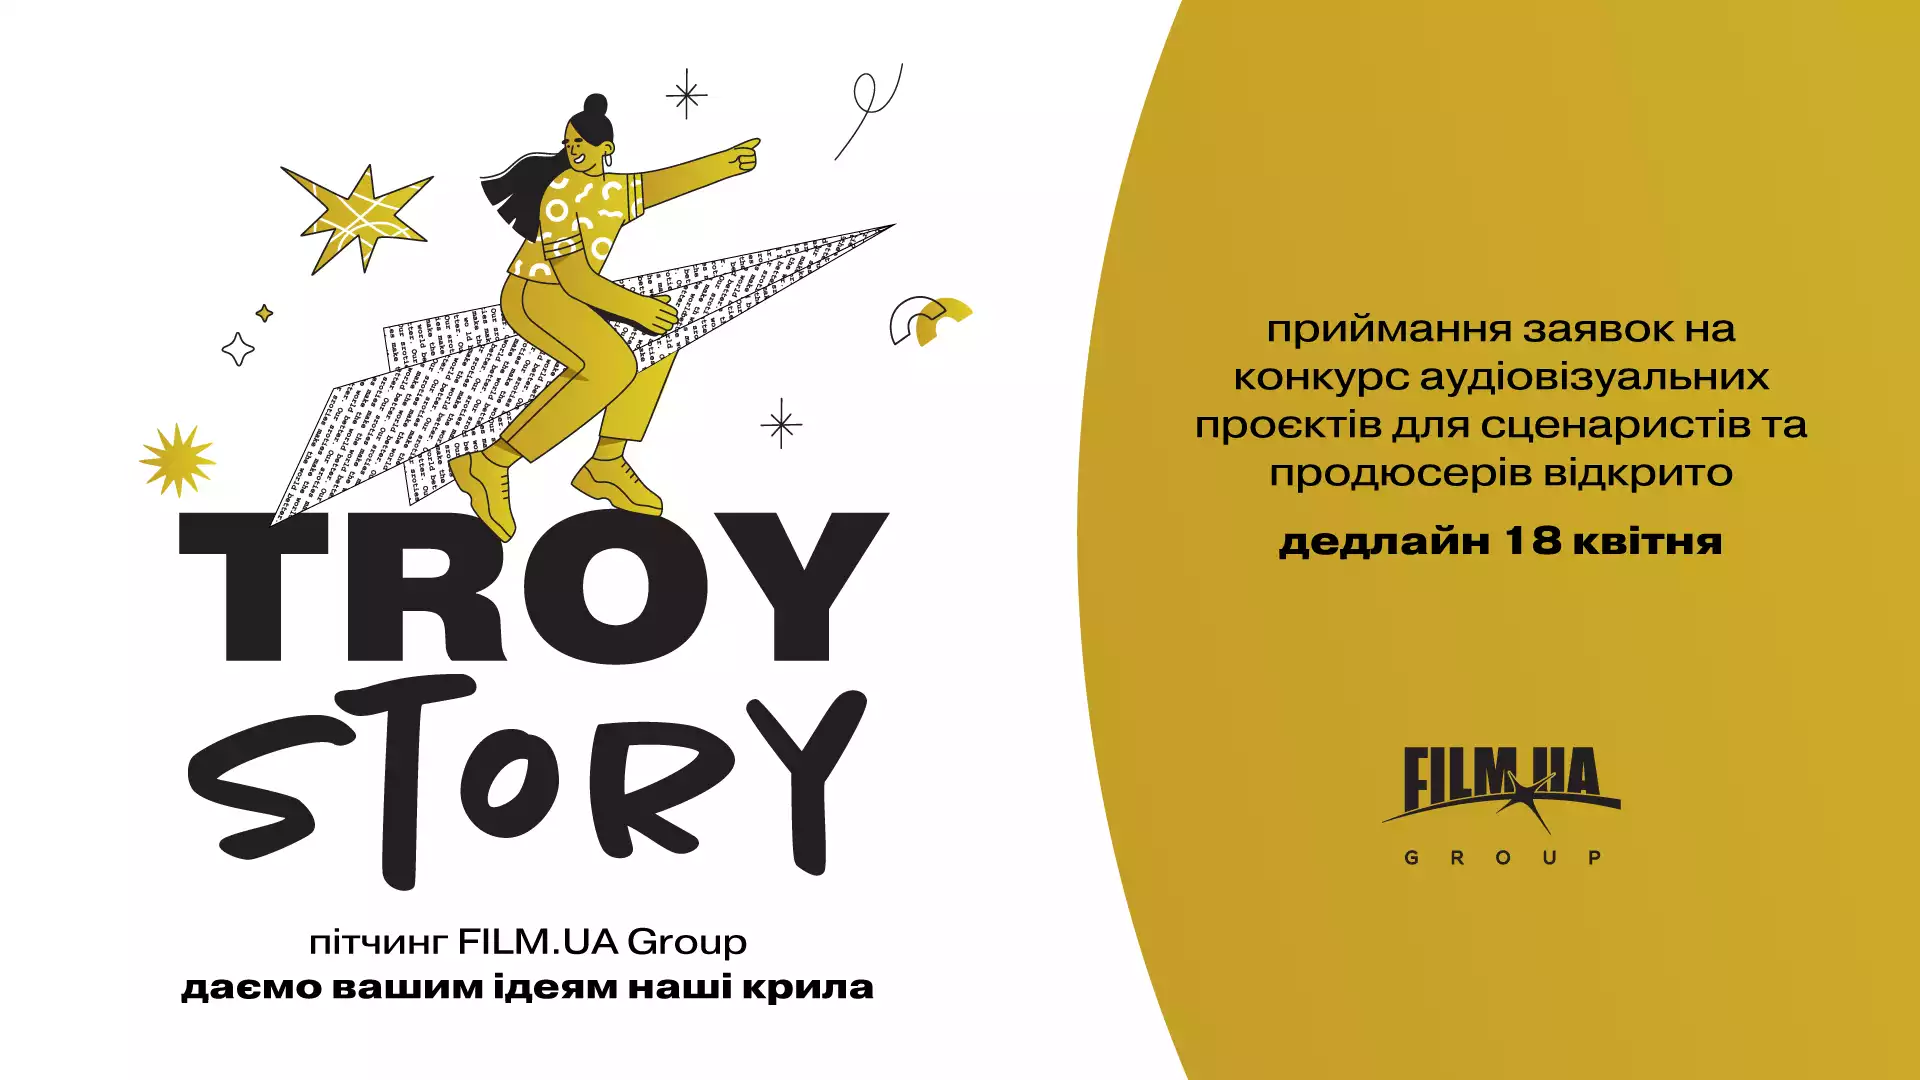 До 18 квітня — приймання заявок на конкурс аудіовізуальних проєктів TroyStory